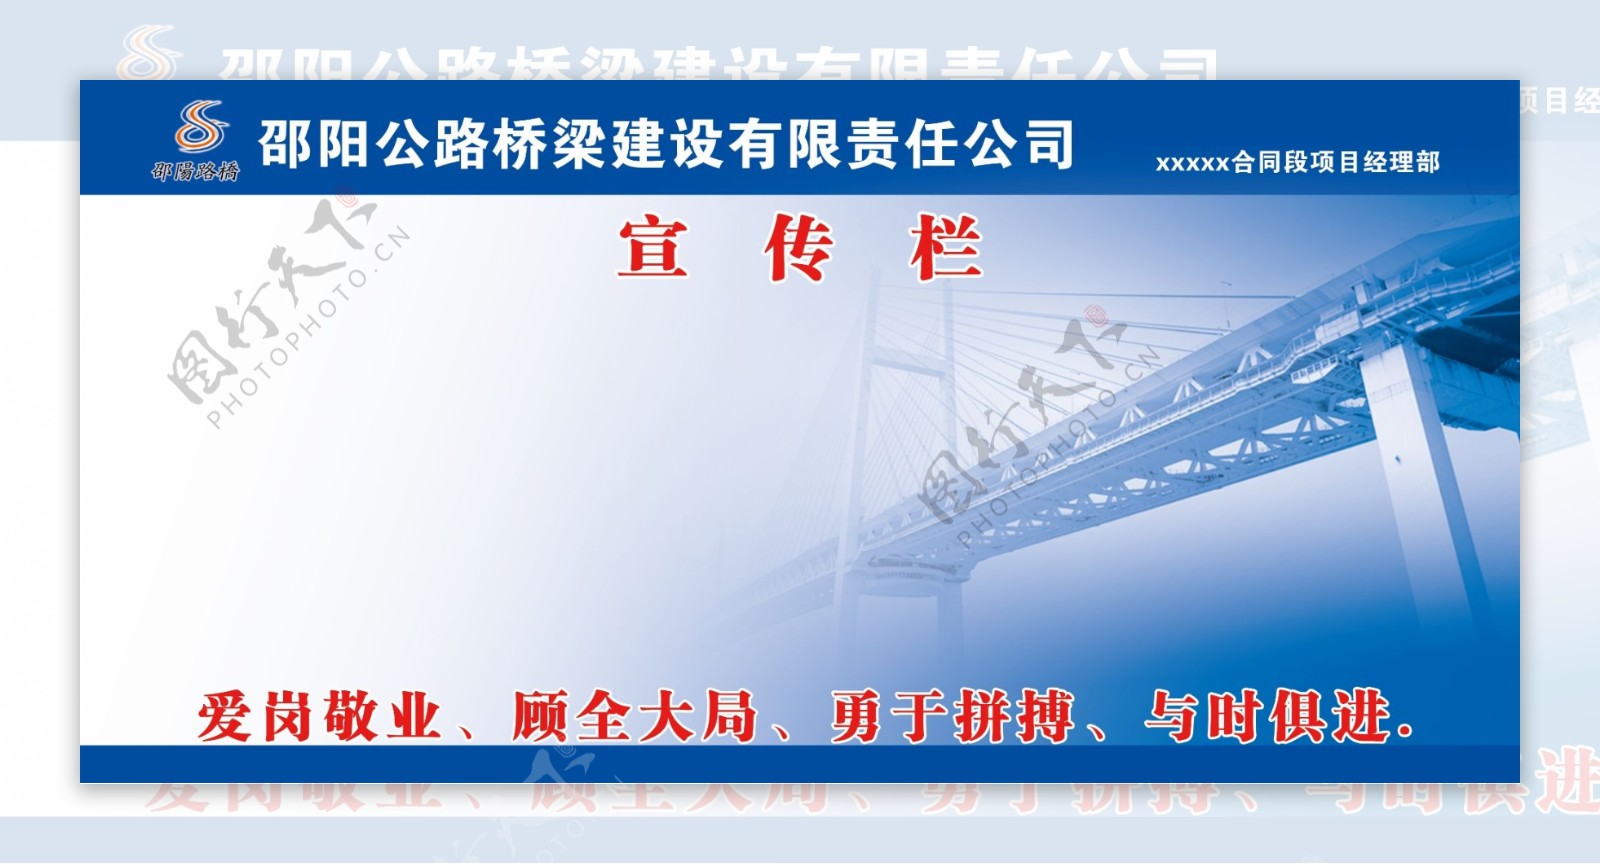 邵阳路桥企业宣传栏图片